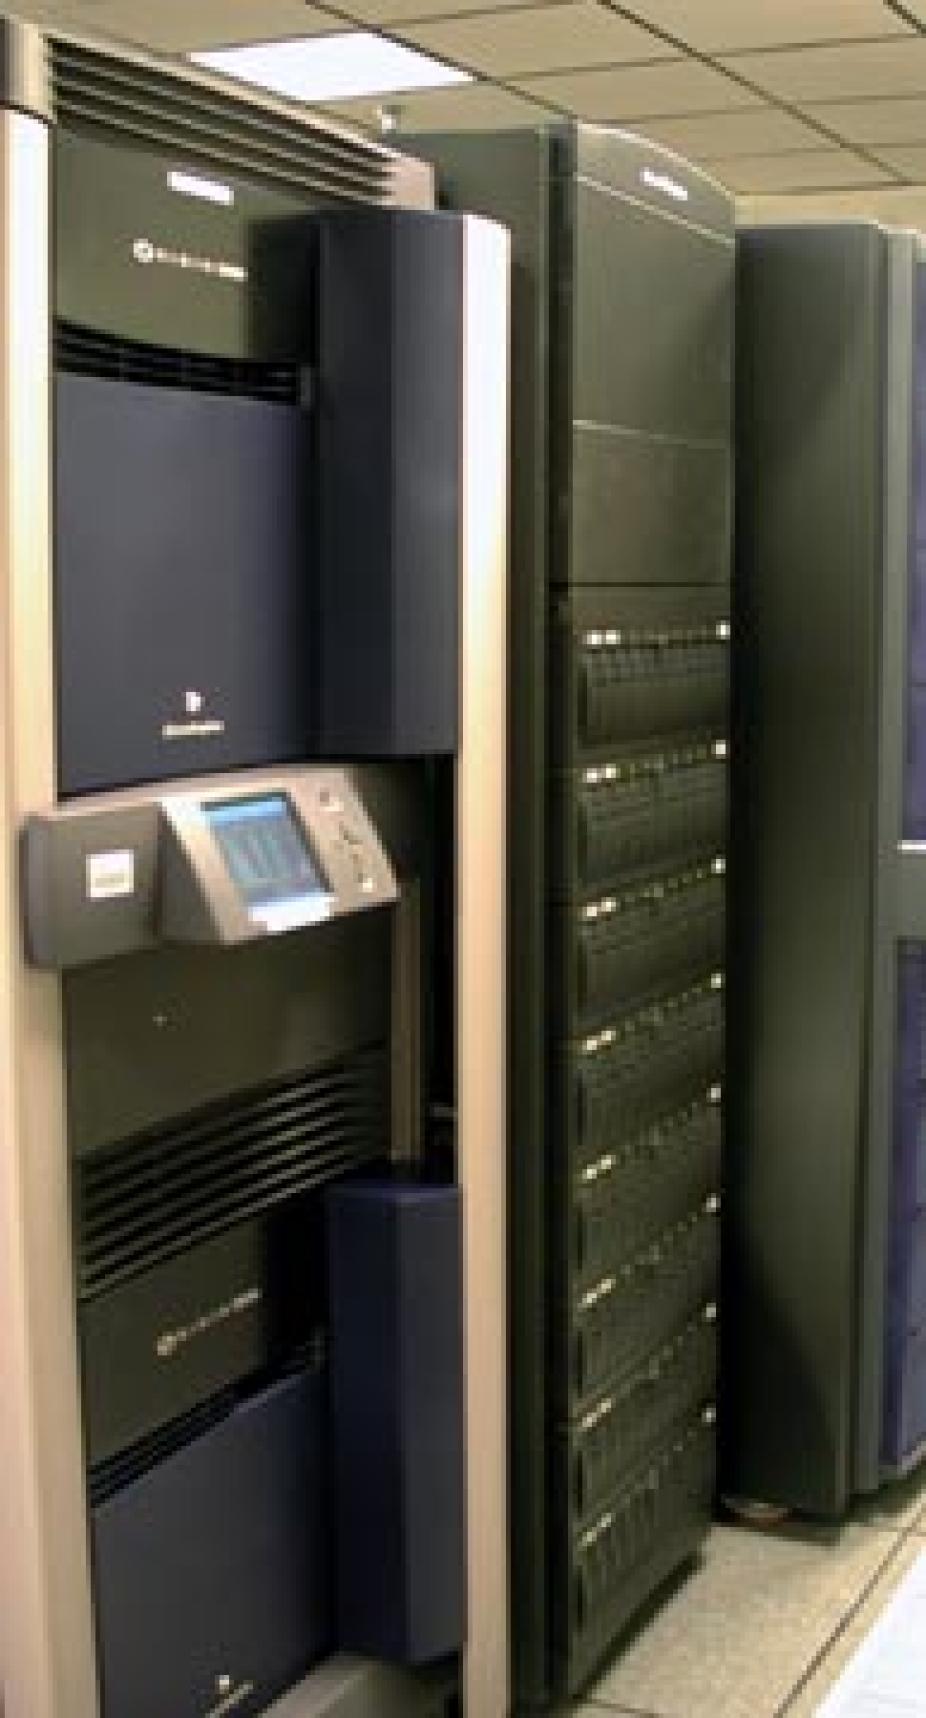 SGI Origin 2000 Supercomputer